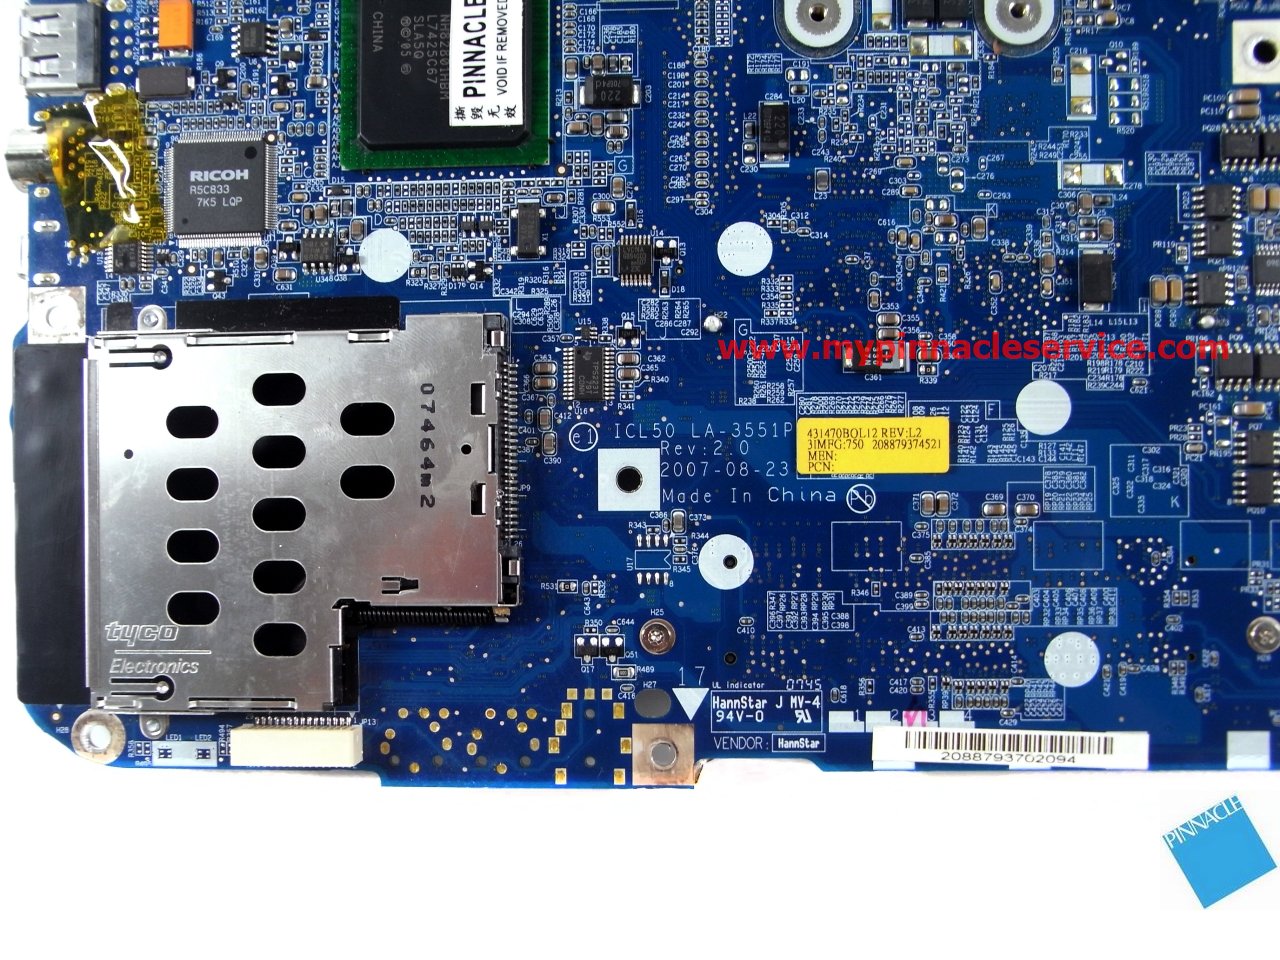 mbahh02001-motherboard-for-acer-aspire-7320-7720-7720g-la-3551p-r0010051.jpg